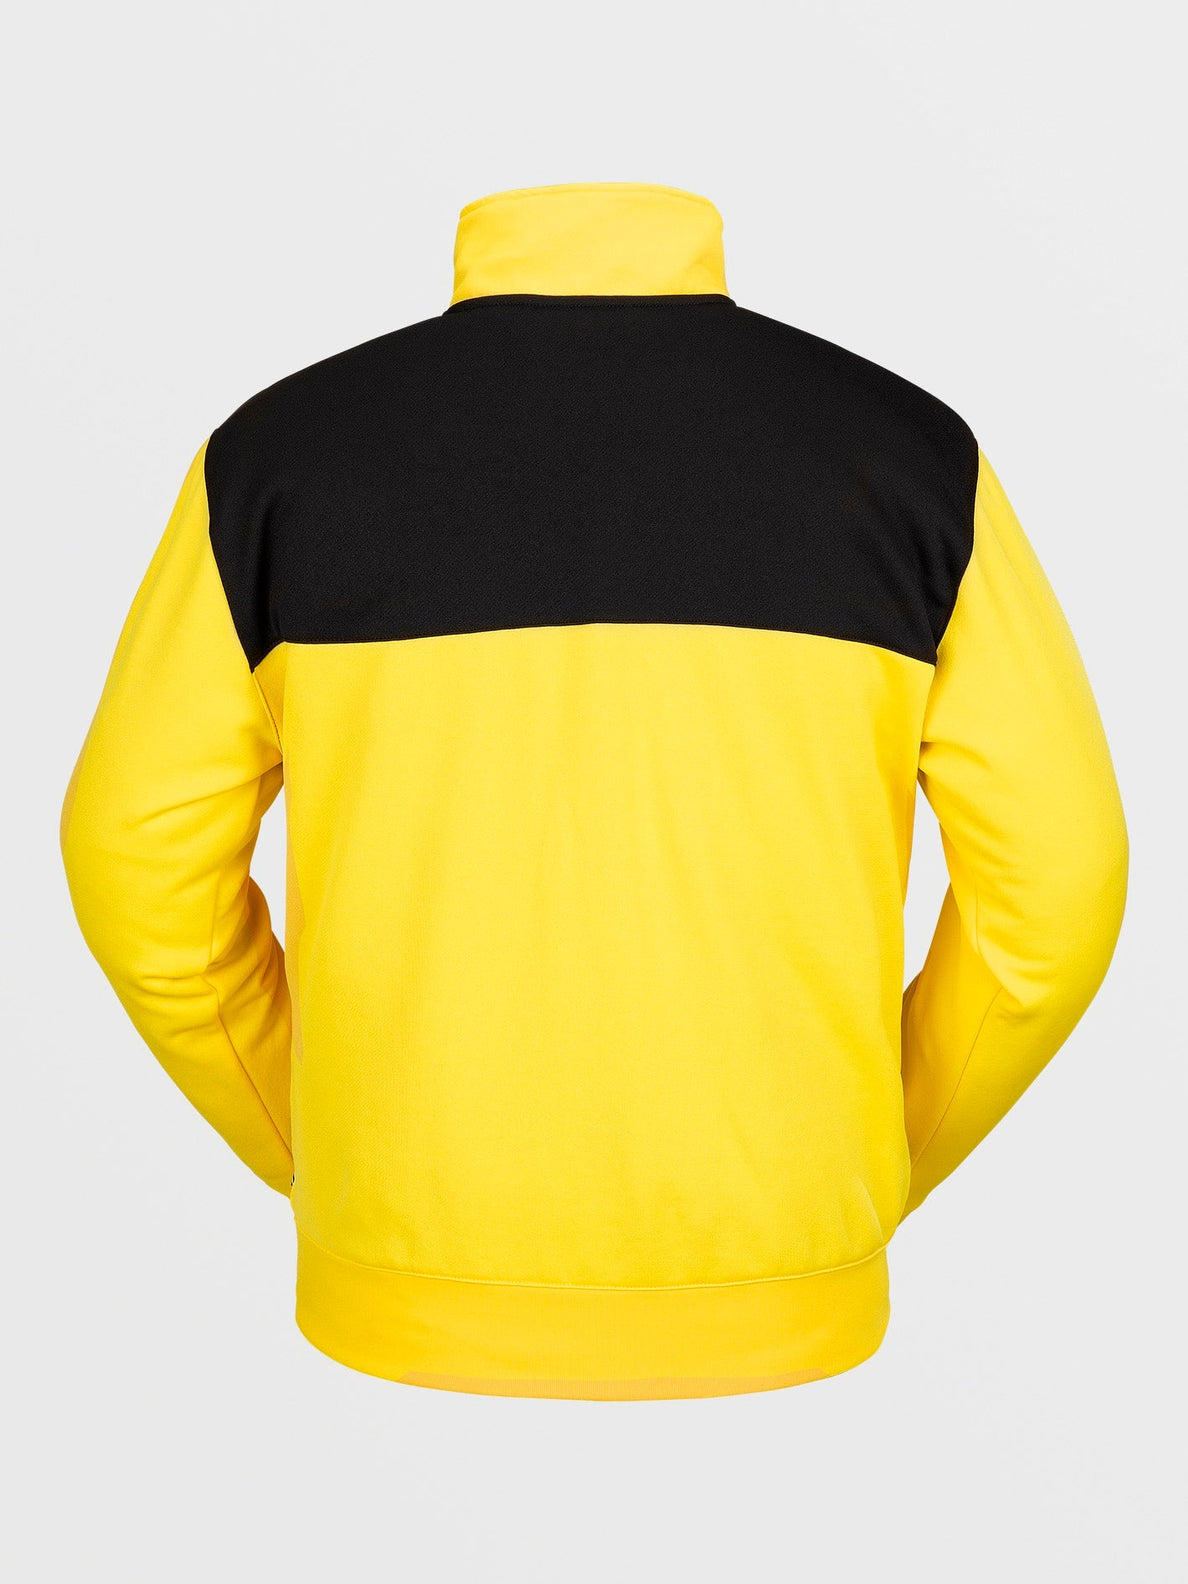 Volcom She 2 Pullover Schnee-Sweatshirt – leuchtendes Gelb | Meistverkaufte Produkte | Neue Produkte | Neueste Produkte | Sammlung_Zalando | Snowboard-Shop | Snowboard-Sweatshirts | Volcom-Shop | surfdevils.com